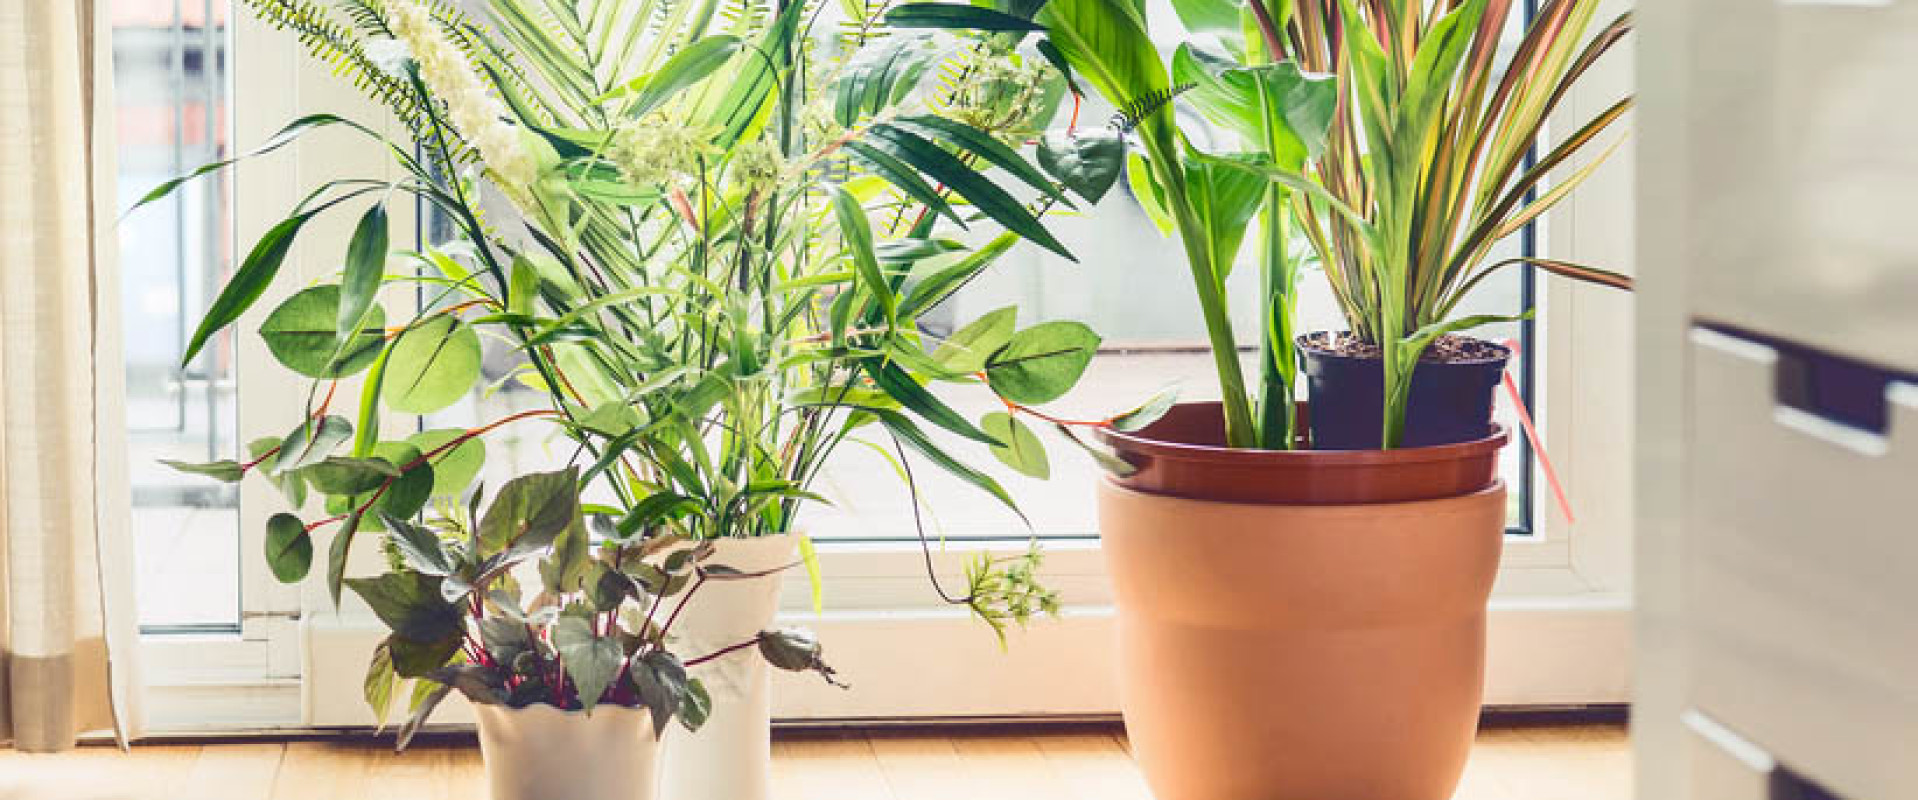 Helpen planten tegen vocht in huis?